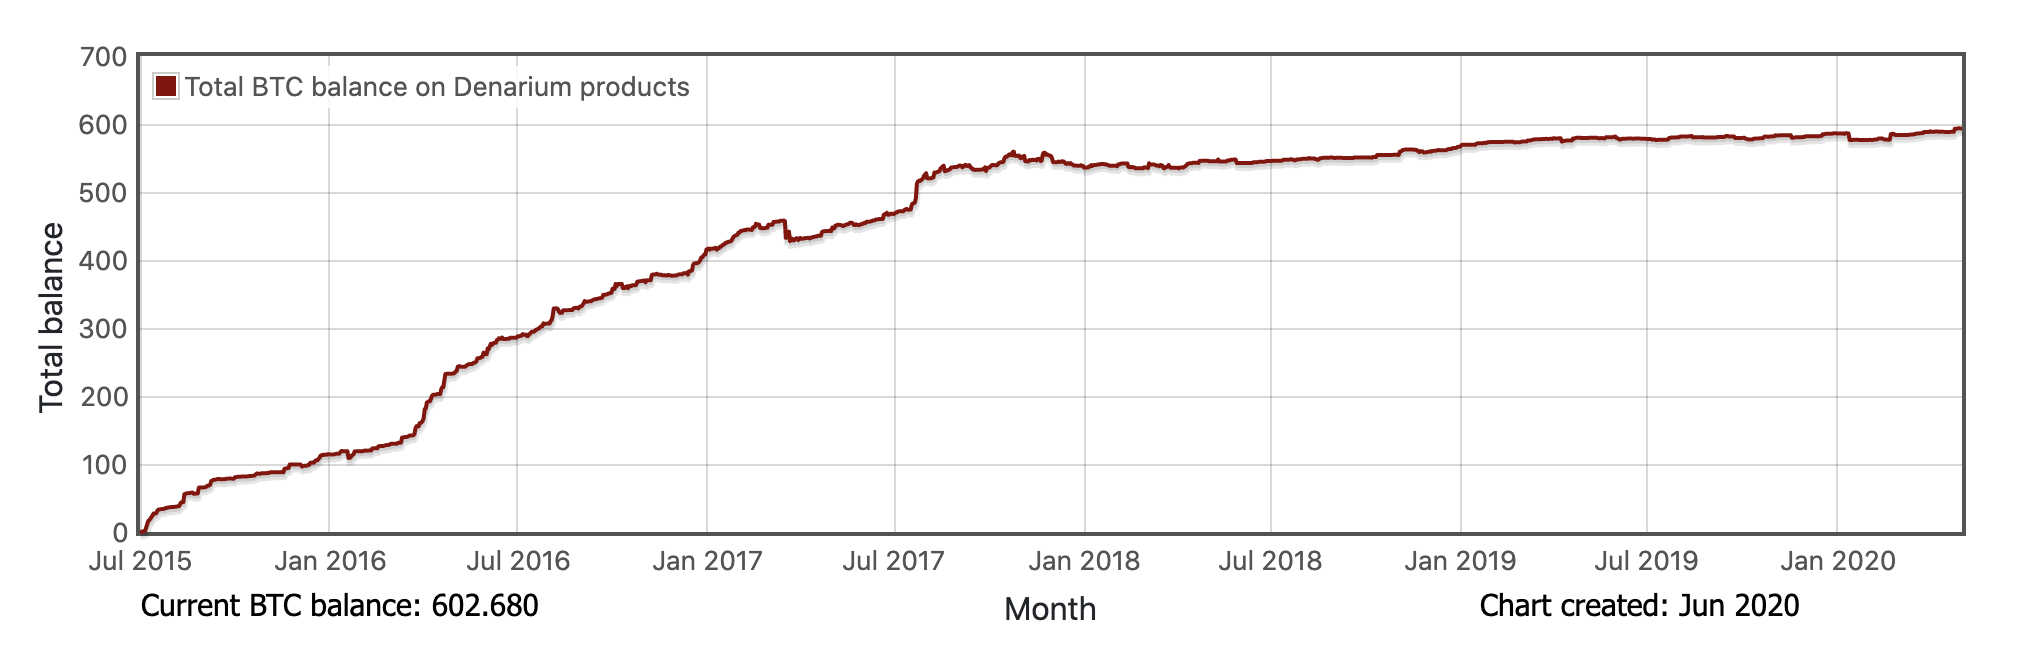 Denarium Bitcoin Total BTC Balance by time